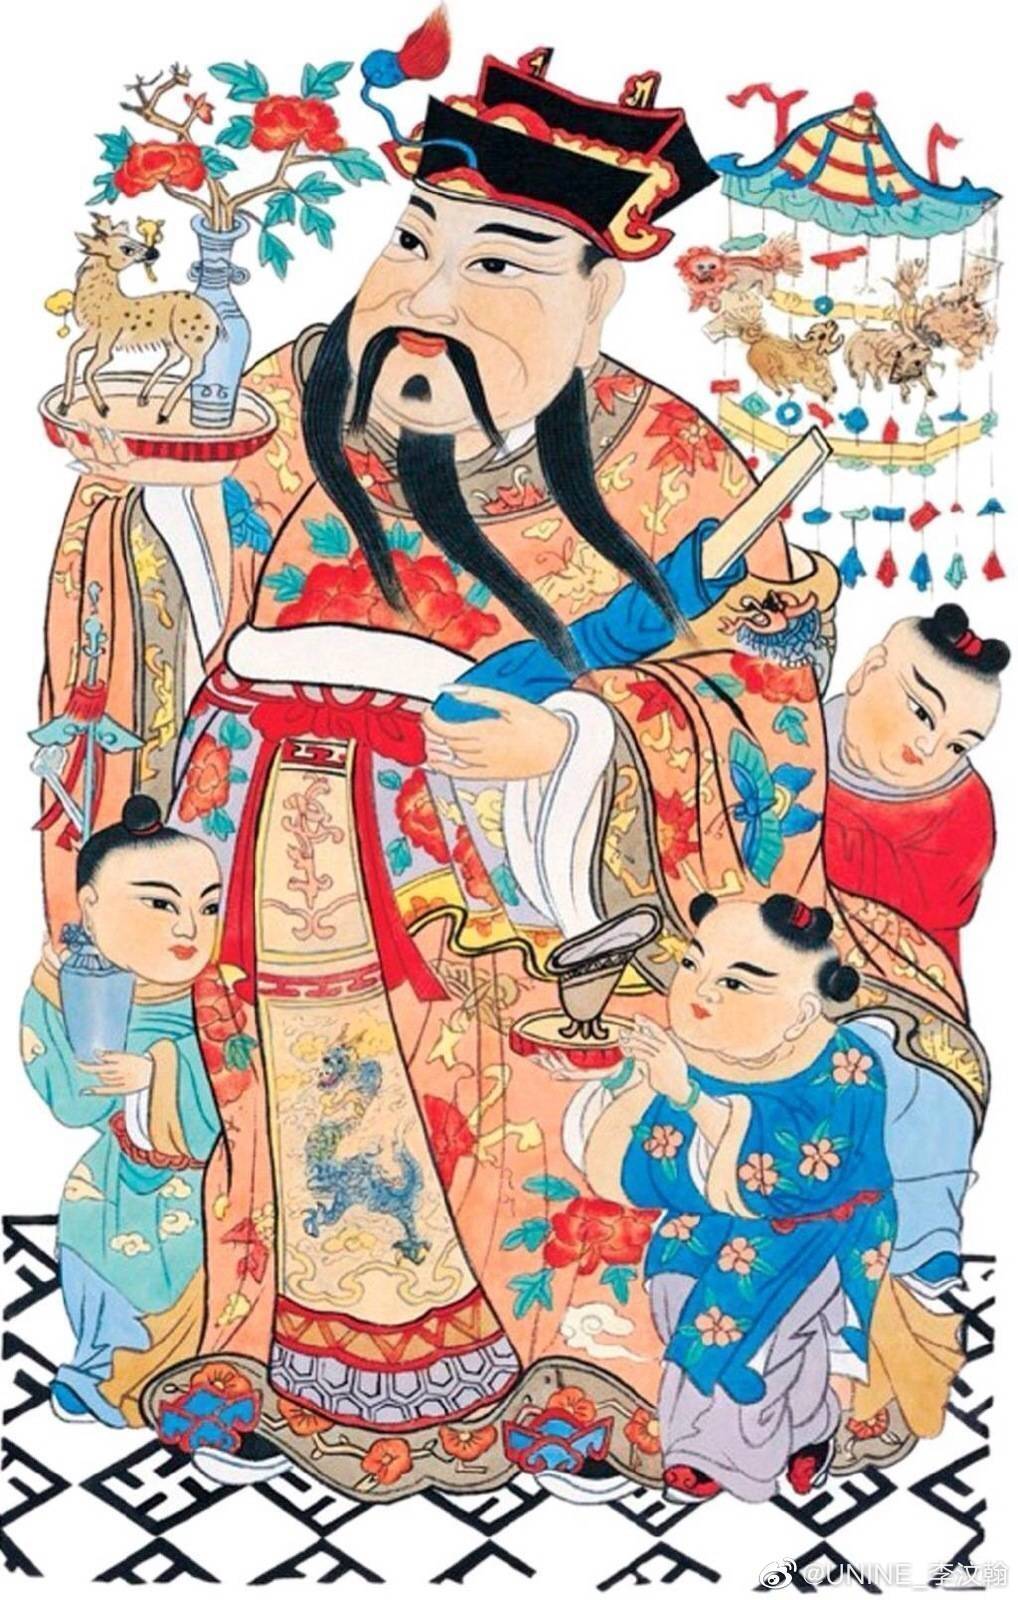 Китайские иллюстрации